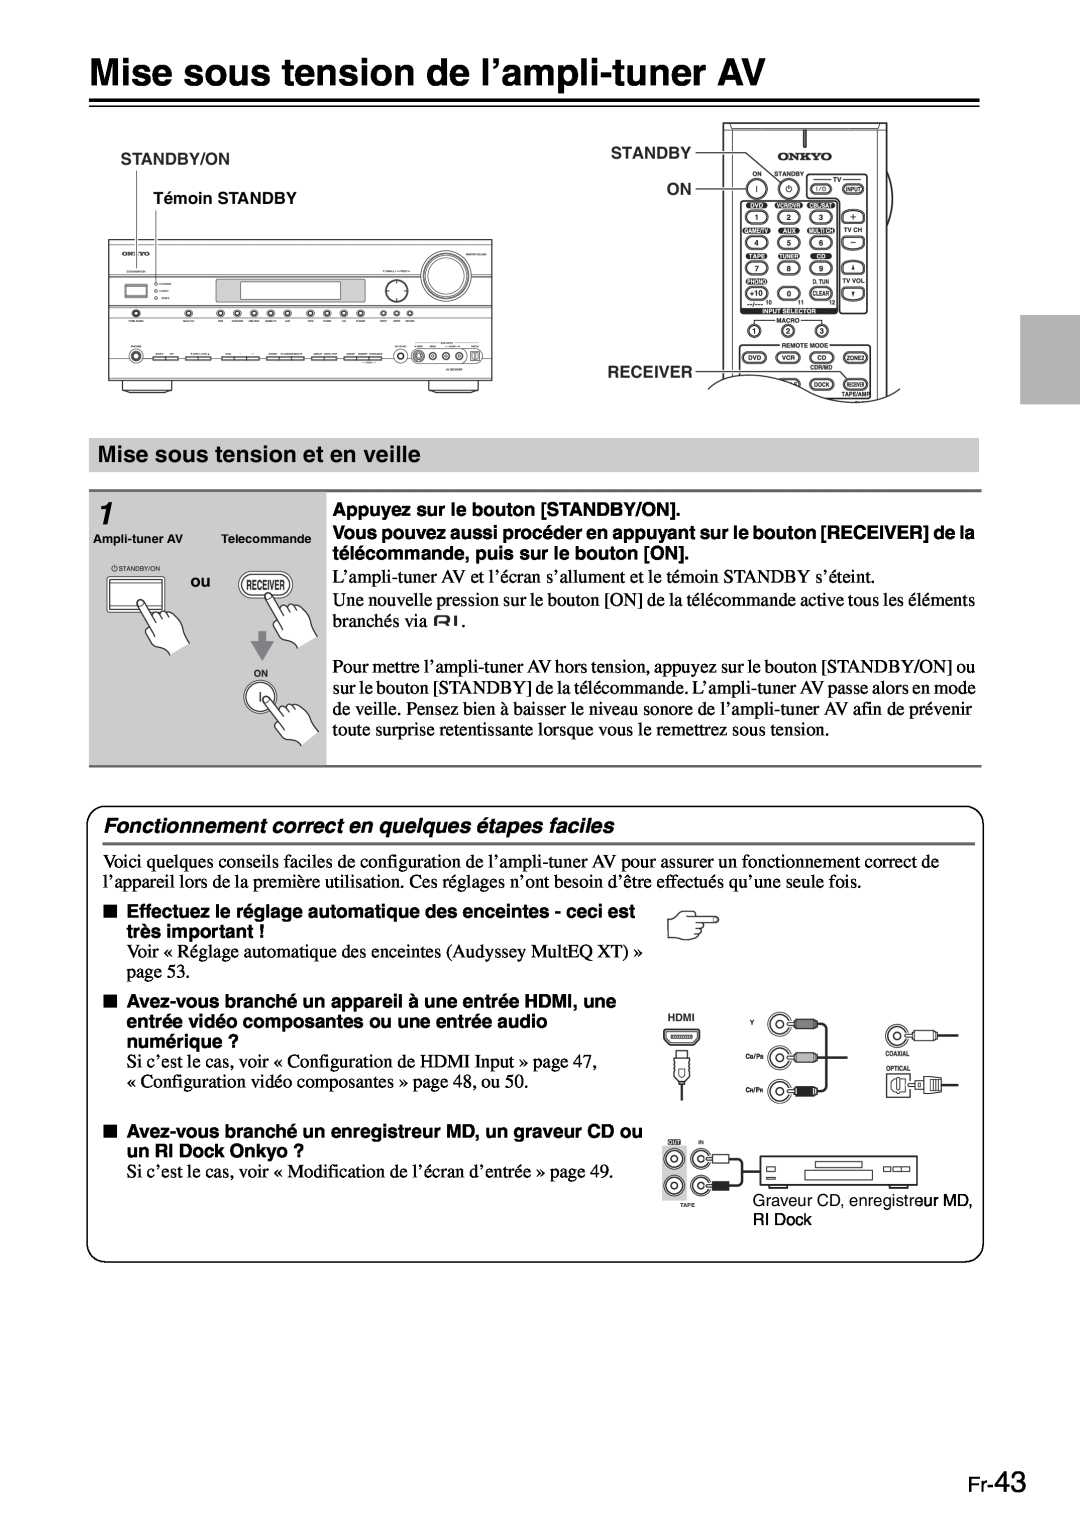 Onkyo TX-SR705 manual Mise sous tension de l’ampli-tunerAV, Mise sous tension et en veille, Fr-43 